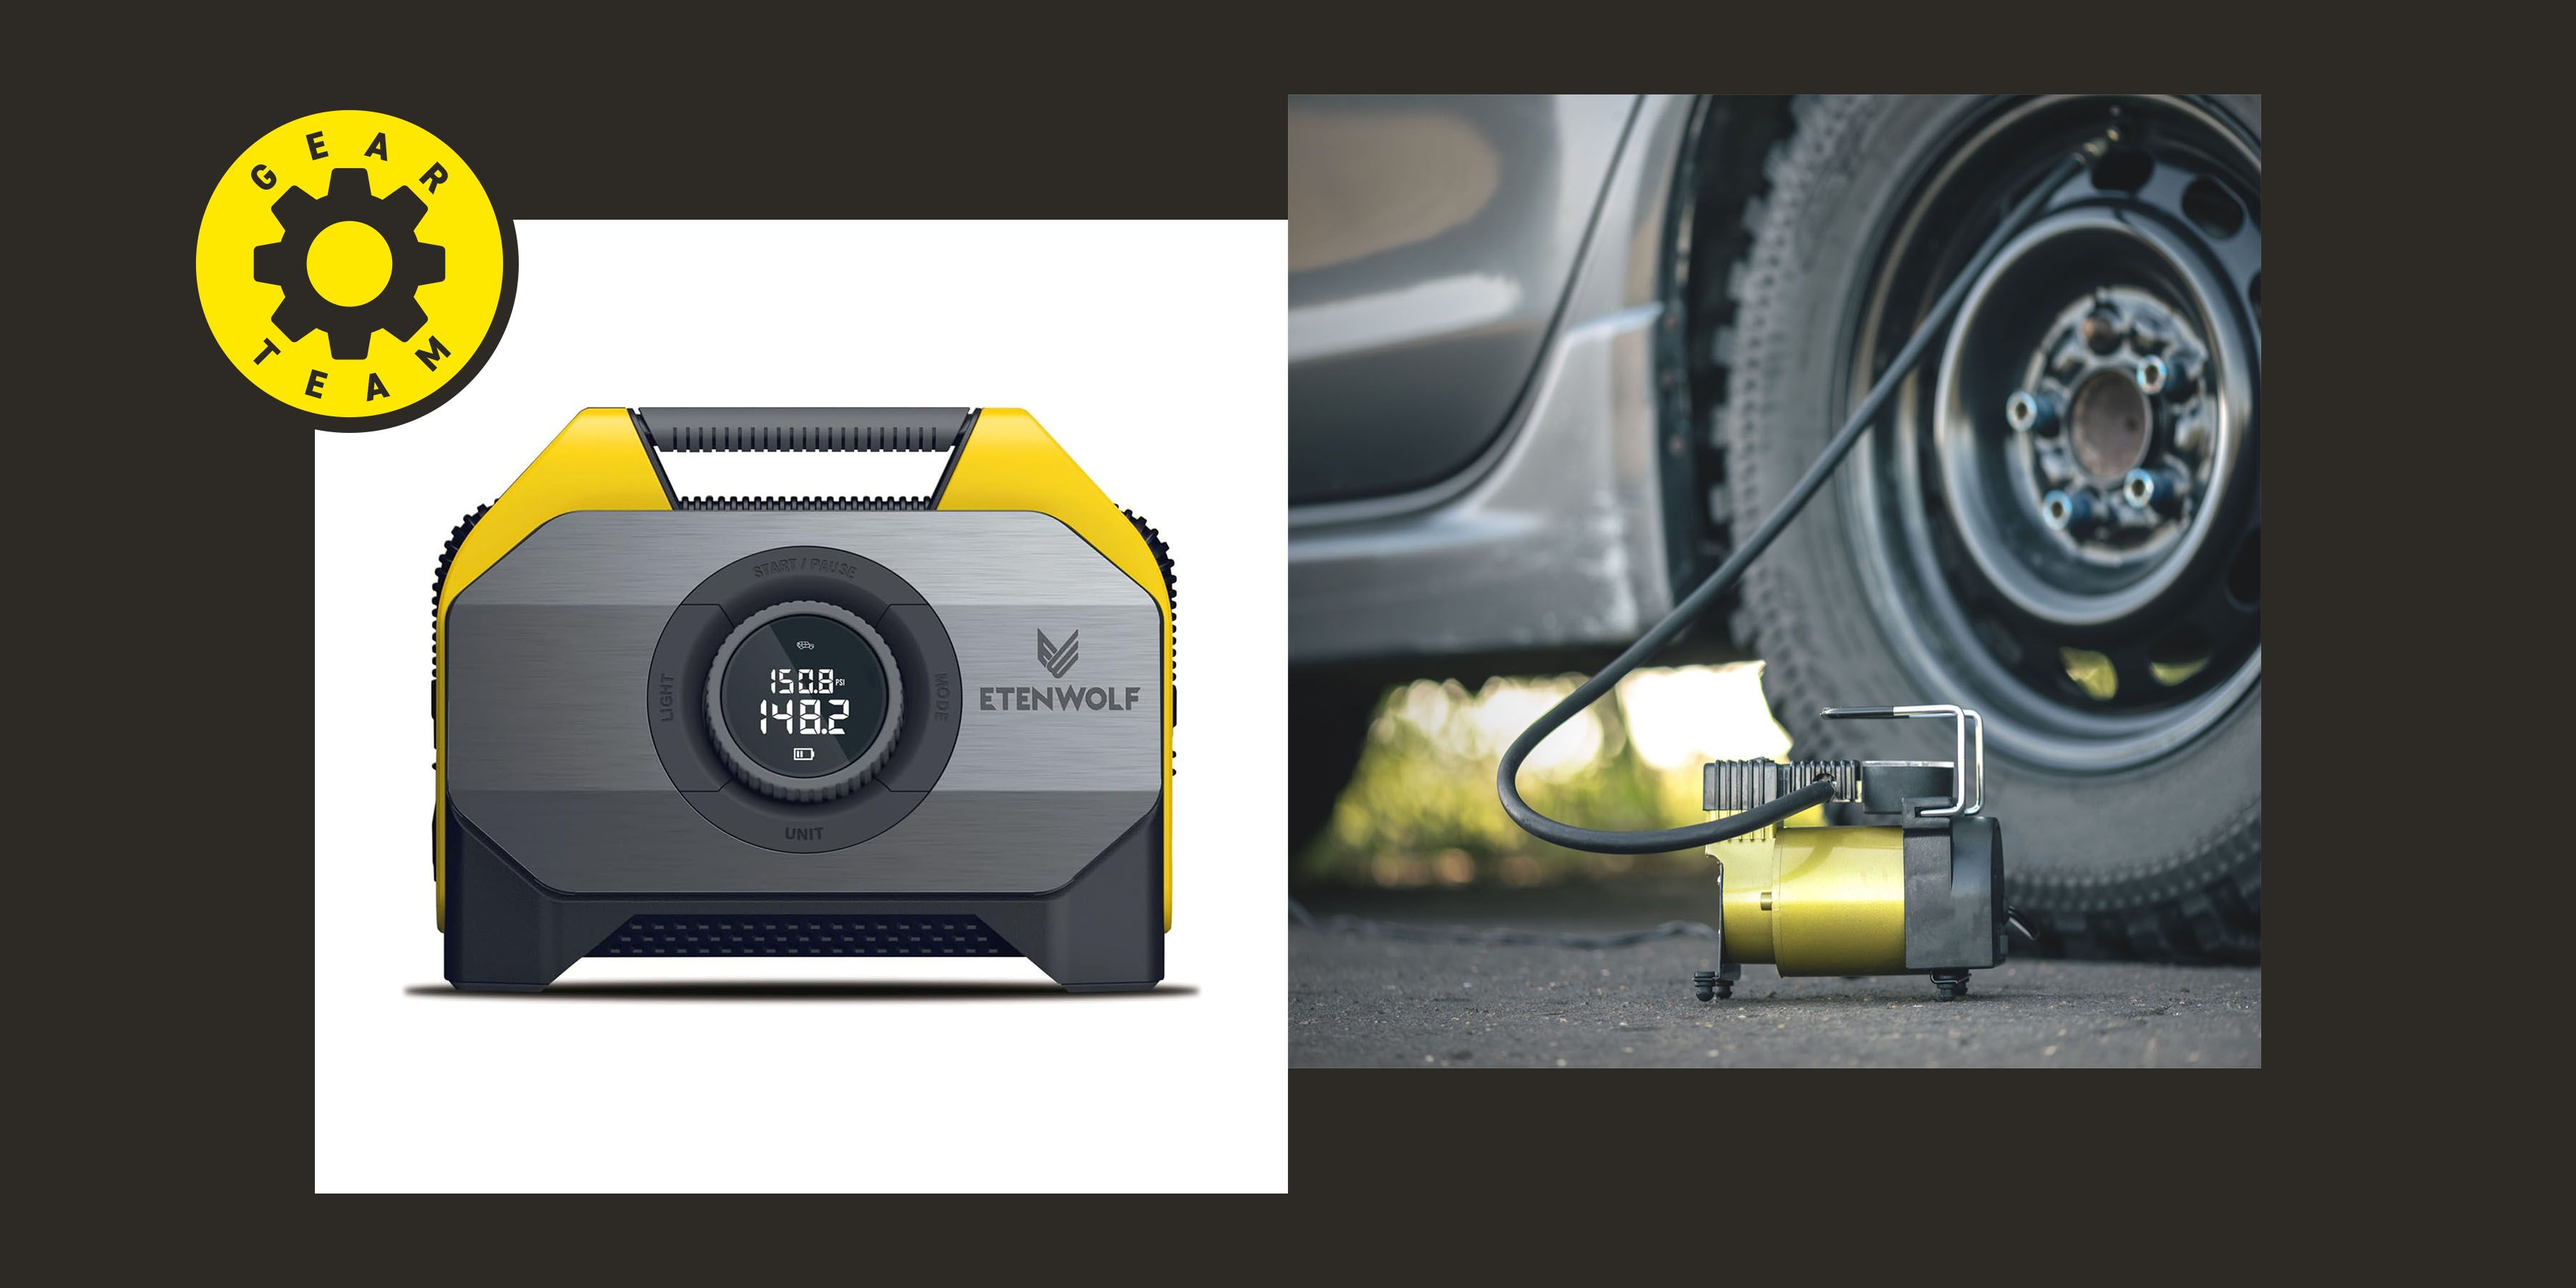 Tire Inflator for DEWALT 20V MAX Battery, Portable Air Compressor Auto Tire  Pump